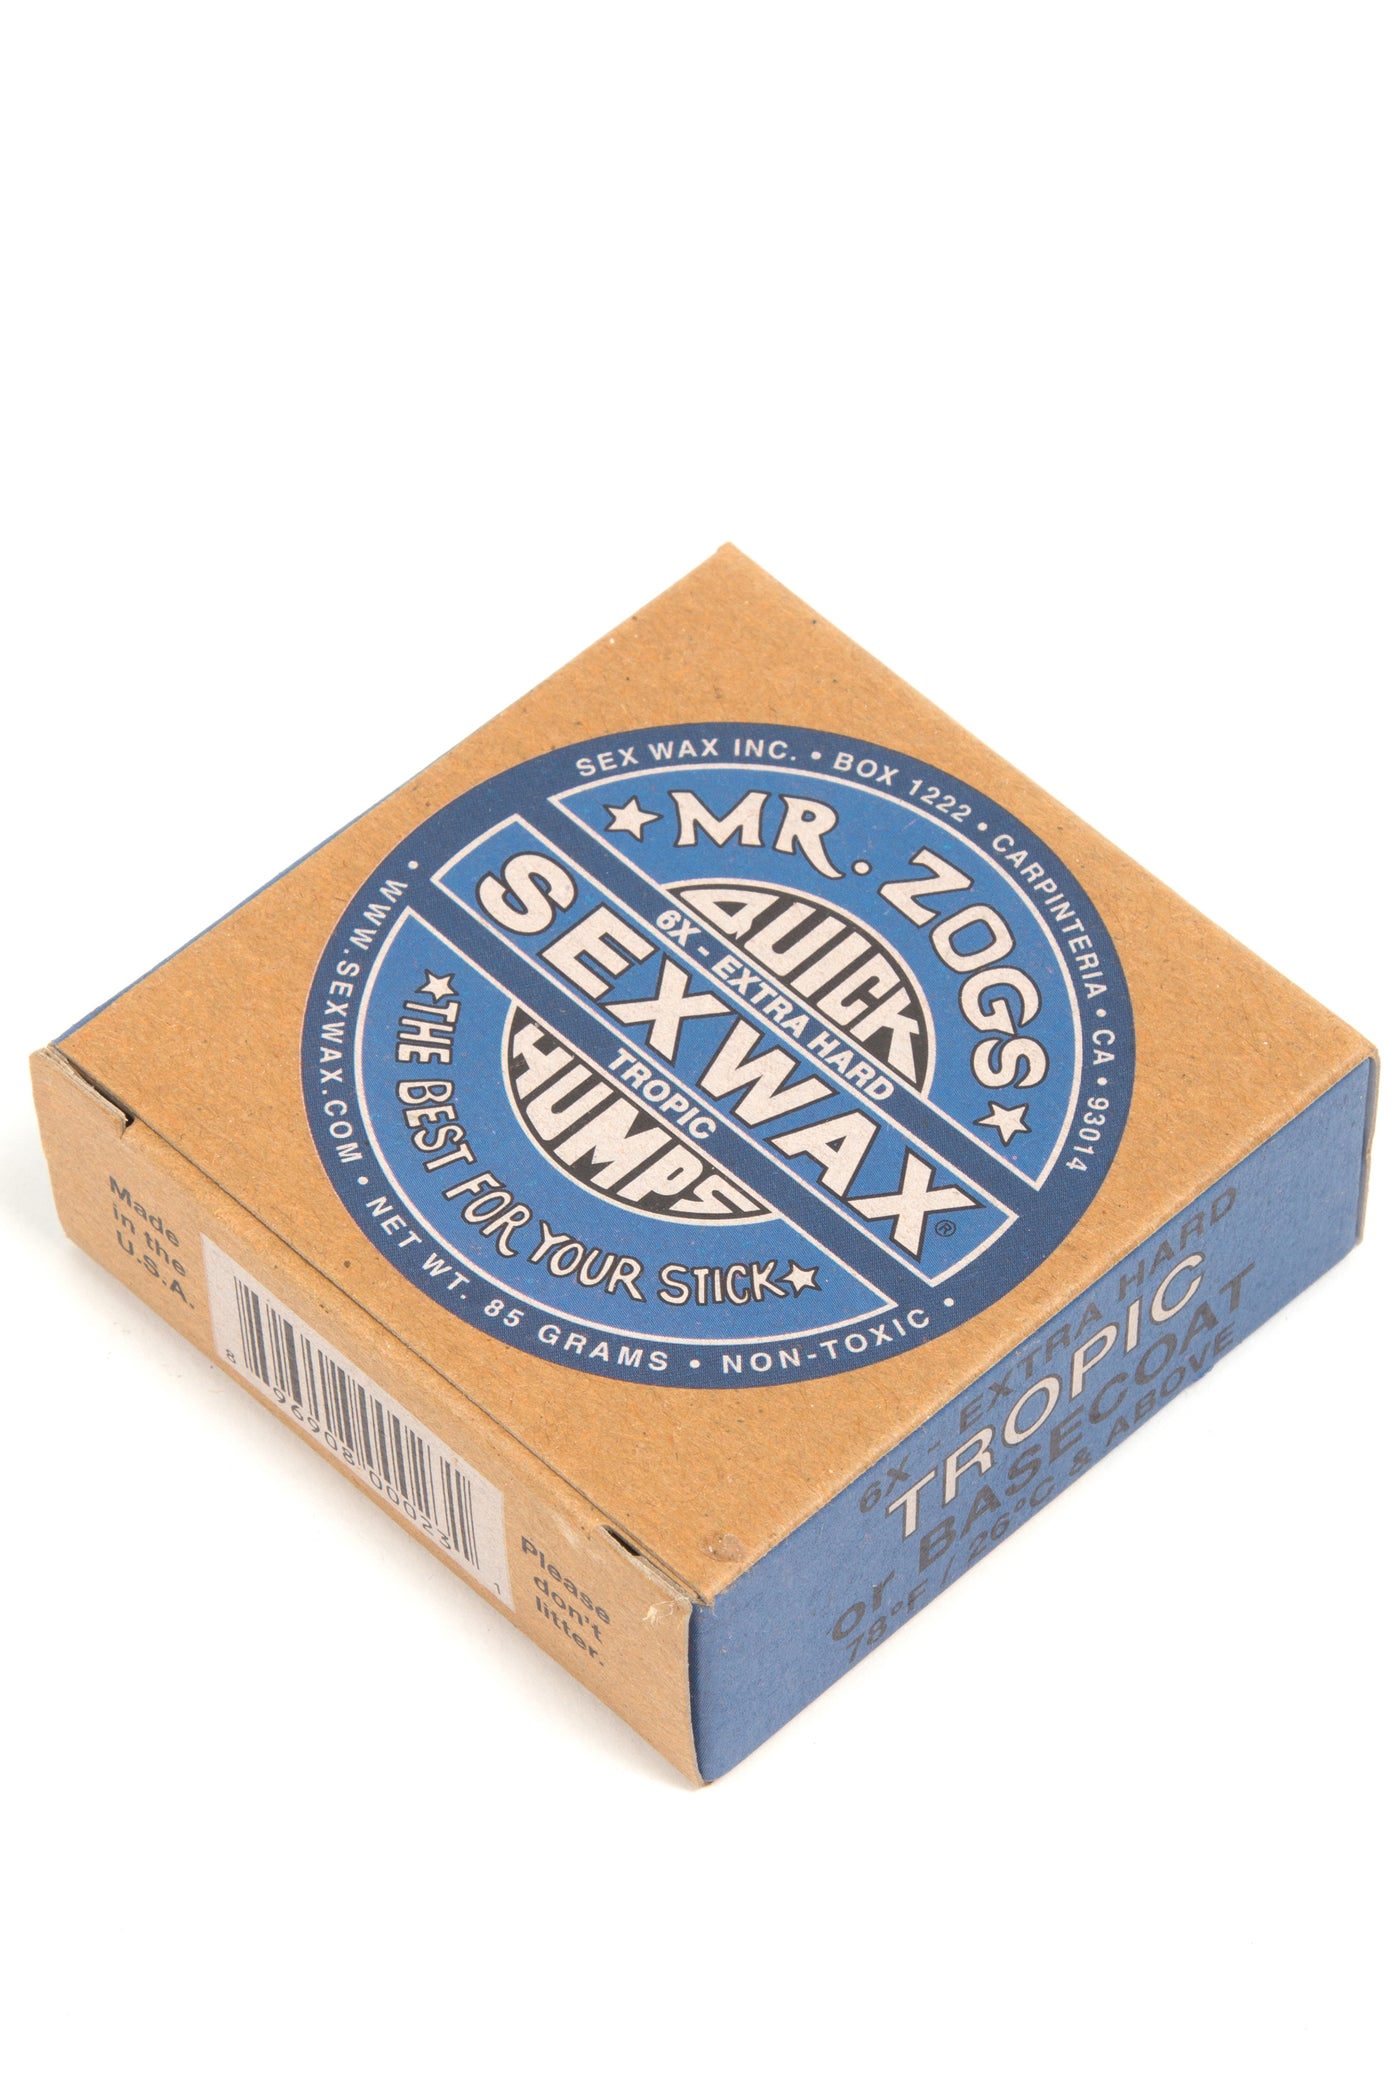 SEXWAX Surf Wax